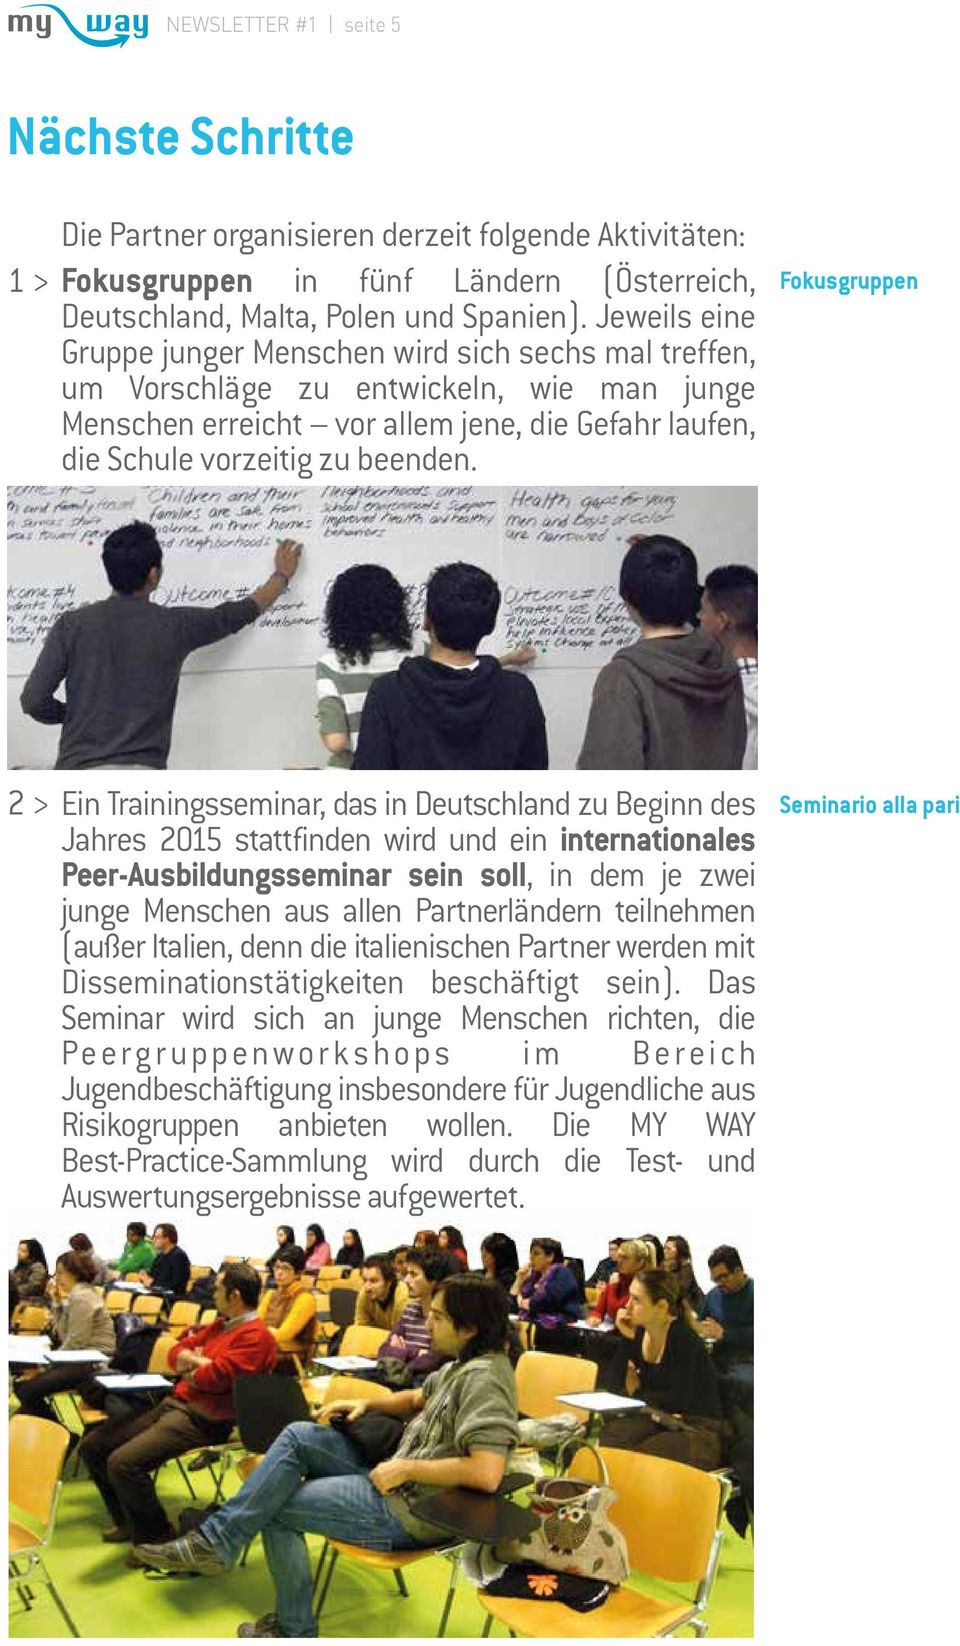 Fokusgruppen 2 > Ein Trainingsseminar, das in Deutschland zu Beginn des Jahres 2015 stattfinden wird und ein internationales Peer-Ausbildungsseminar sein soll, in dem je zwei junge Menschen aus allen